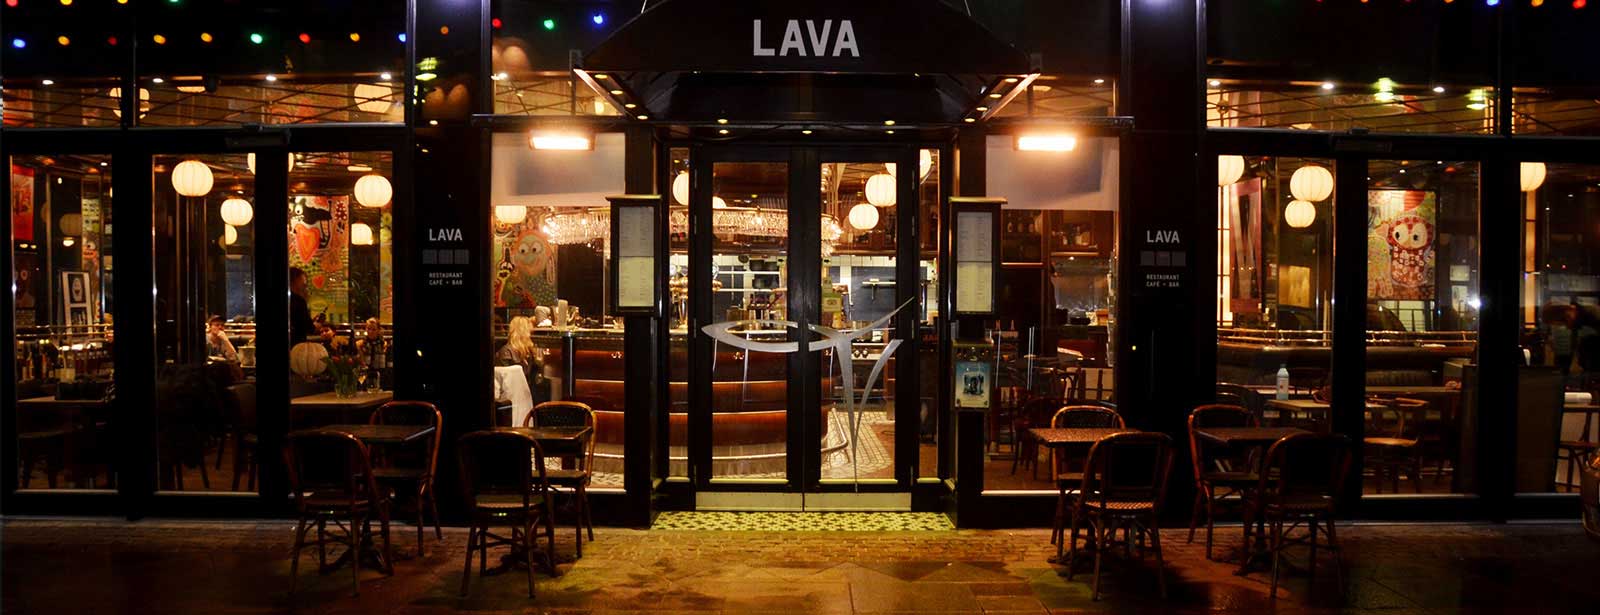 Restaurant LAVA ved åen i Aarhus